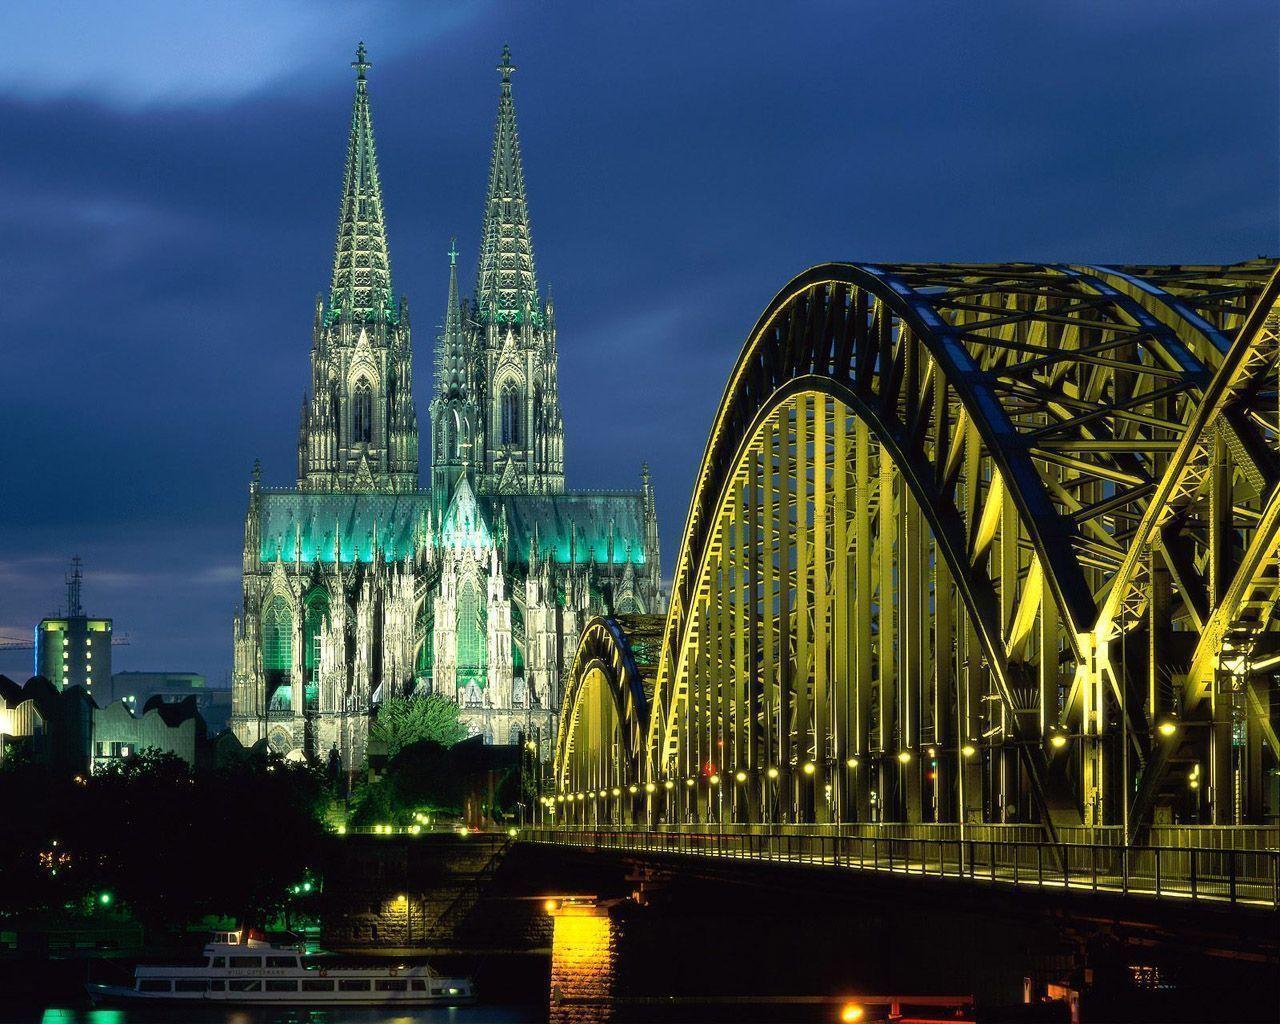 Free Bridge To Gothic Church Wallpaper, Free Bridge To Gothic